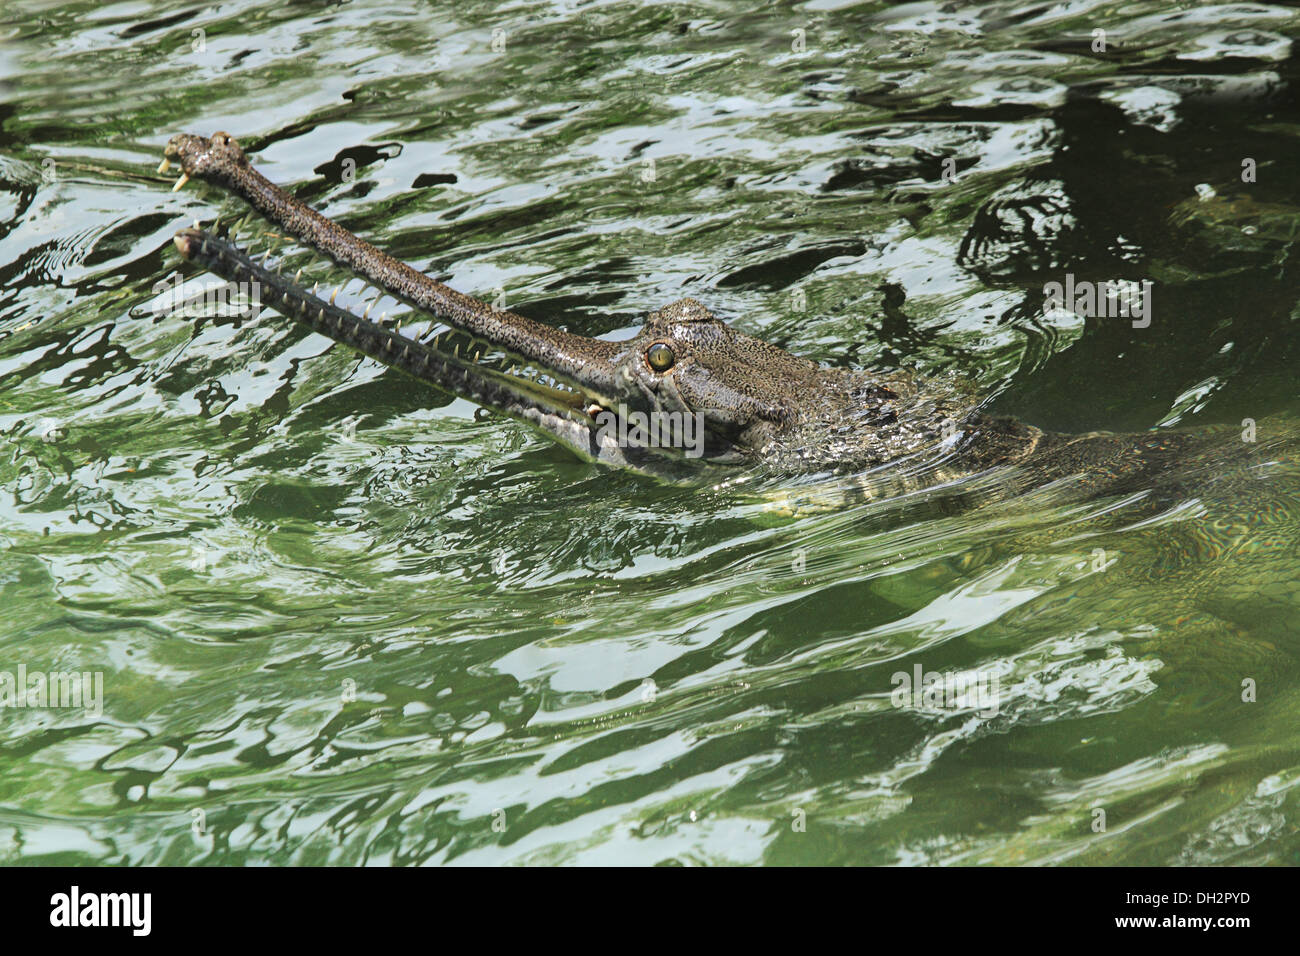 Crocodile Gharial indien dans l'eau à Jamshrdpur Asie Inde Jharkhand zoo Banque D'Images